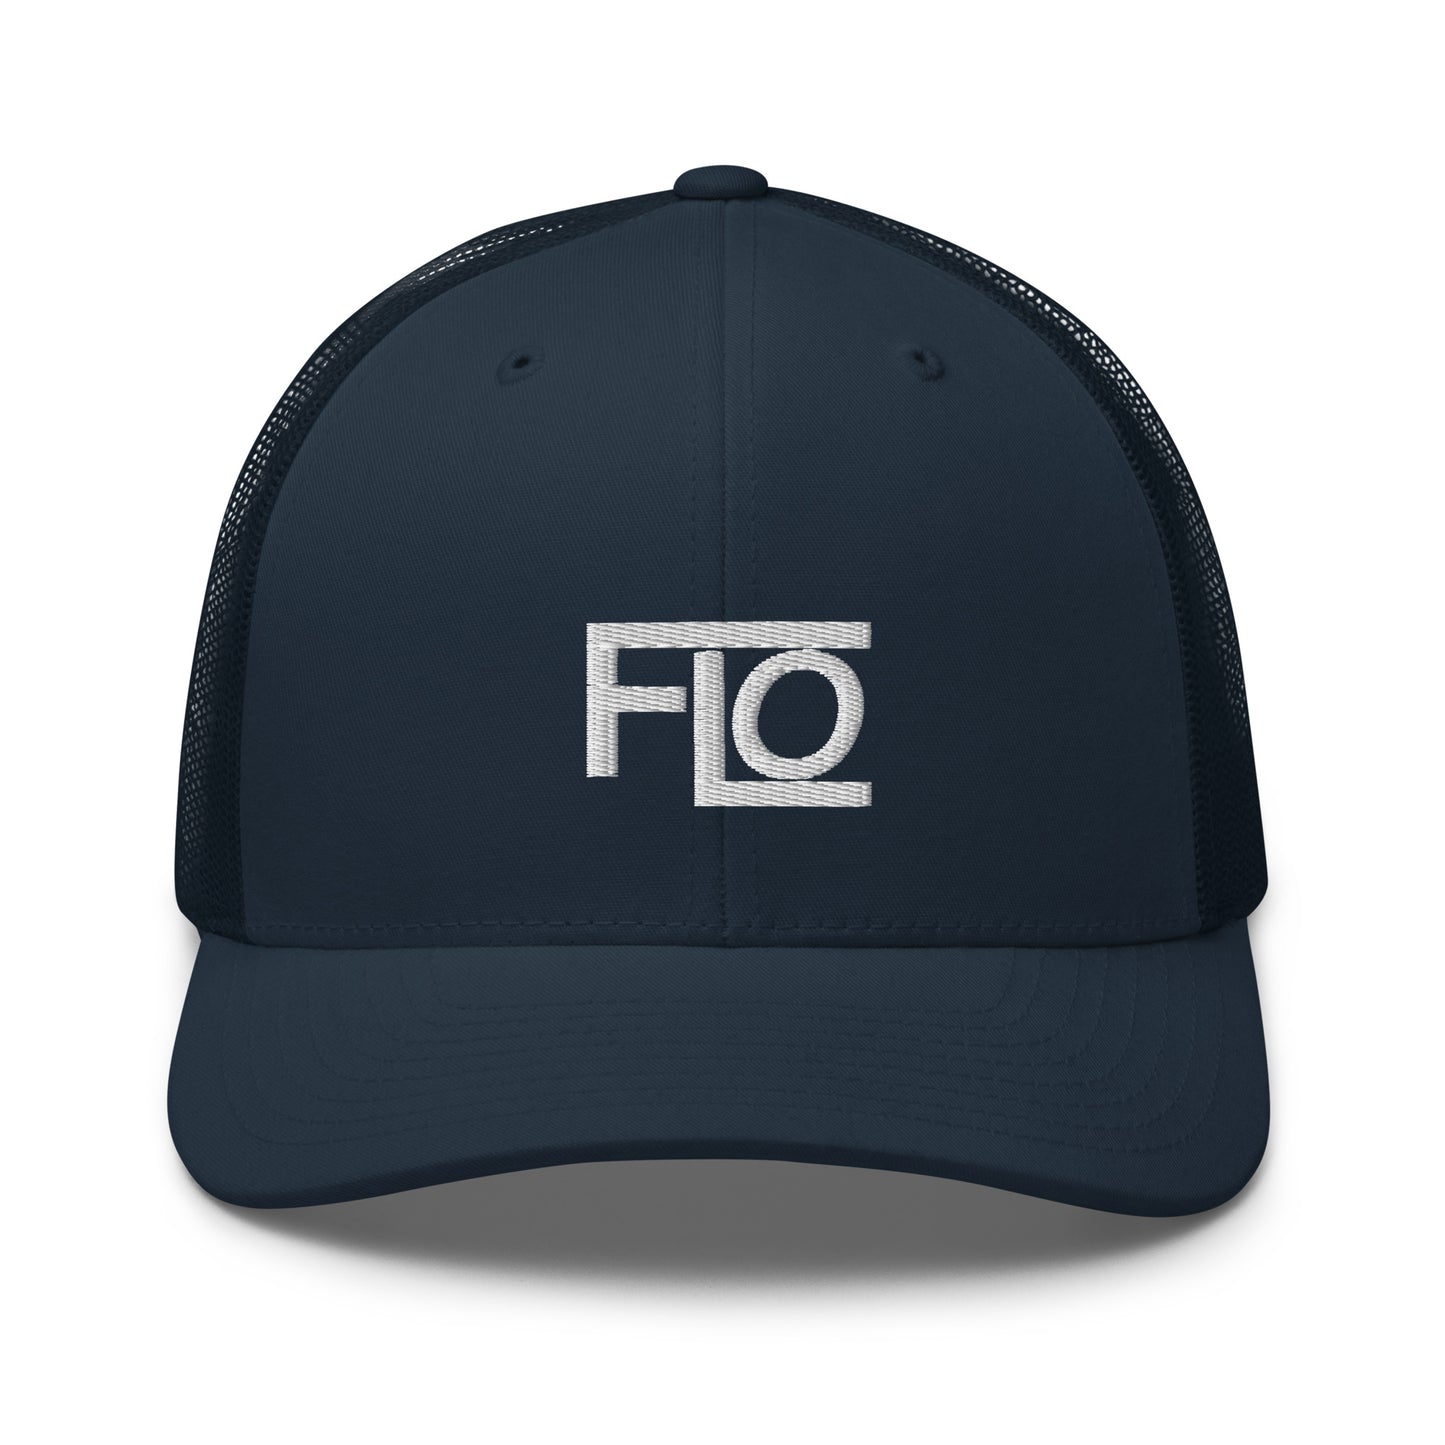 FLO Trucker Hat